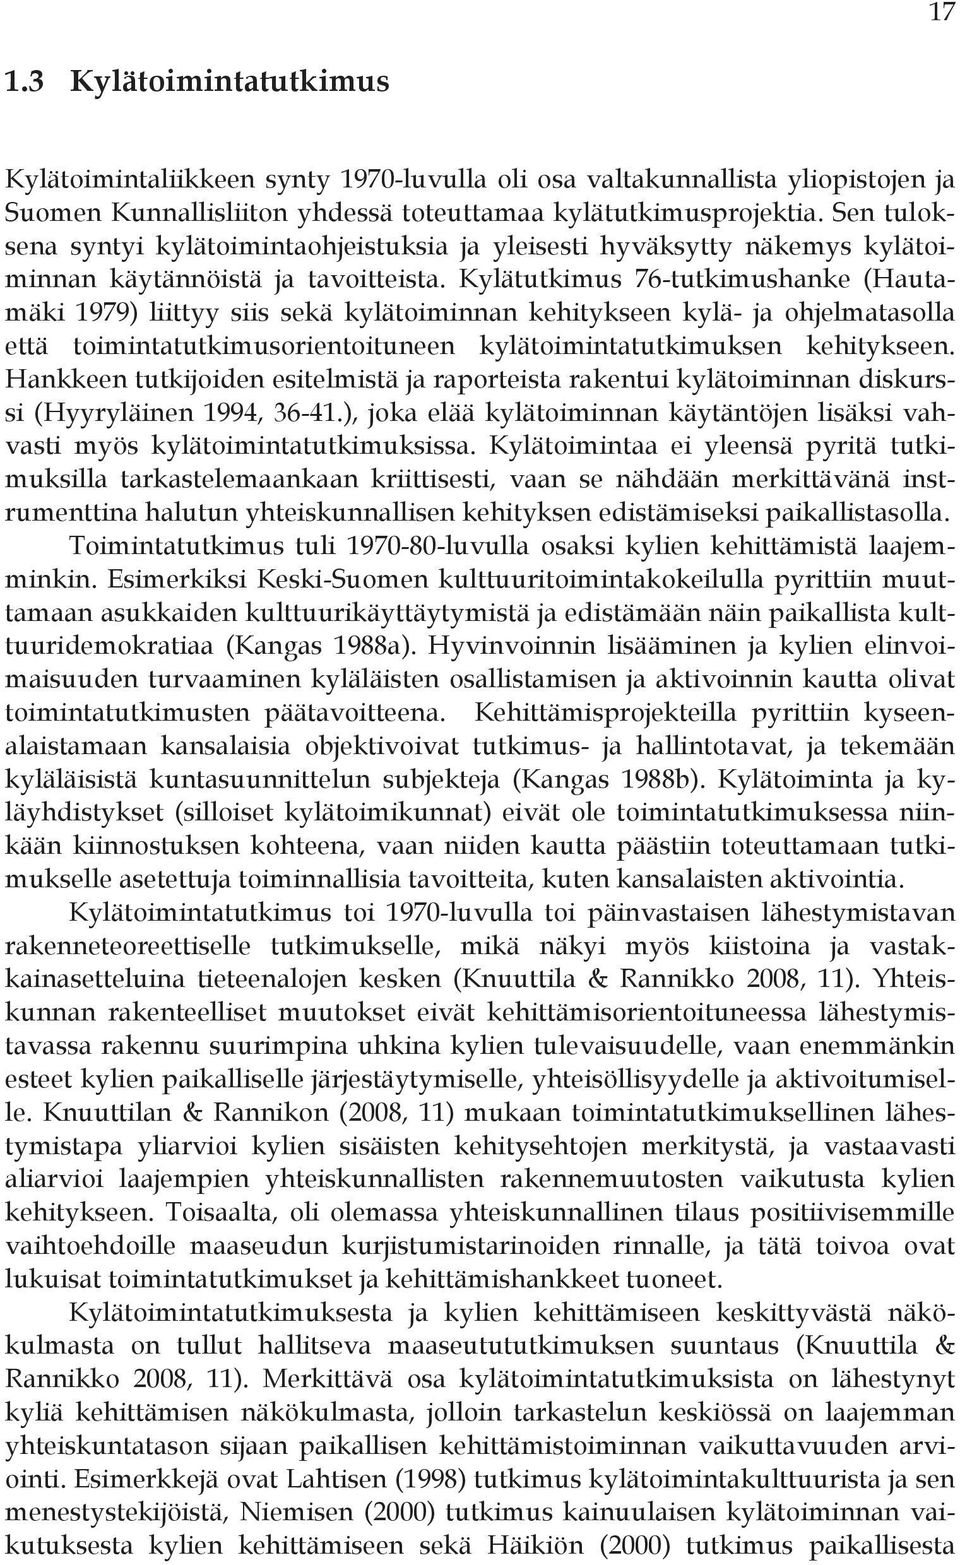 Kylätutkimus 76-tutkimushanke (Hautamäki 1979) liittyy siis sekä kylätoiminnan kehitykseen kylä- ja ohjelmatasolla että toimintatutkimusorientoituneen kylätoimintatutkimuksen kehitykseen.